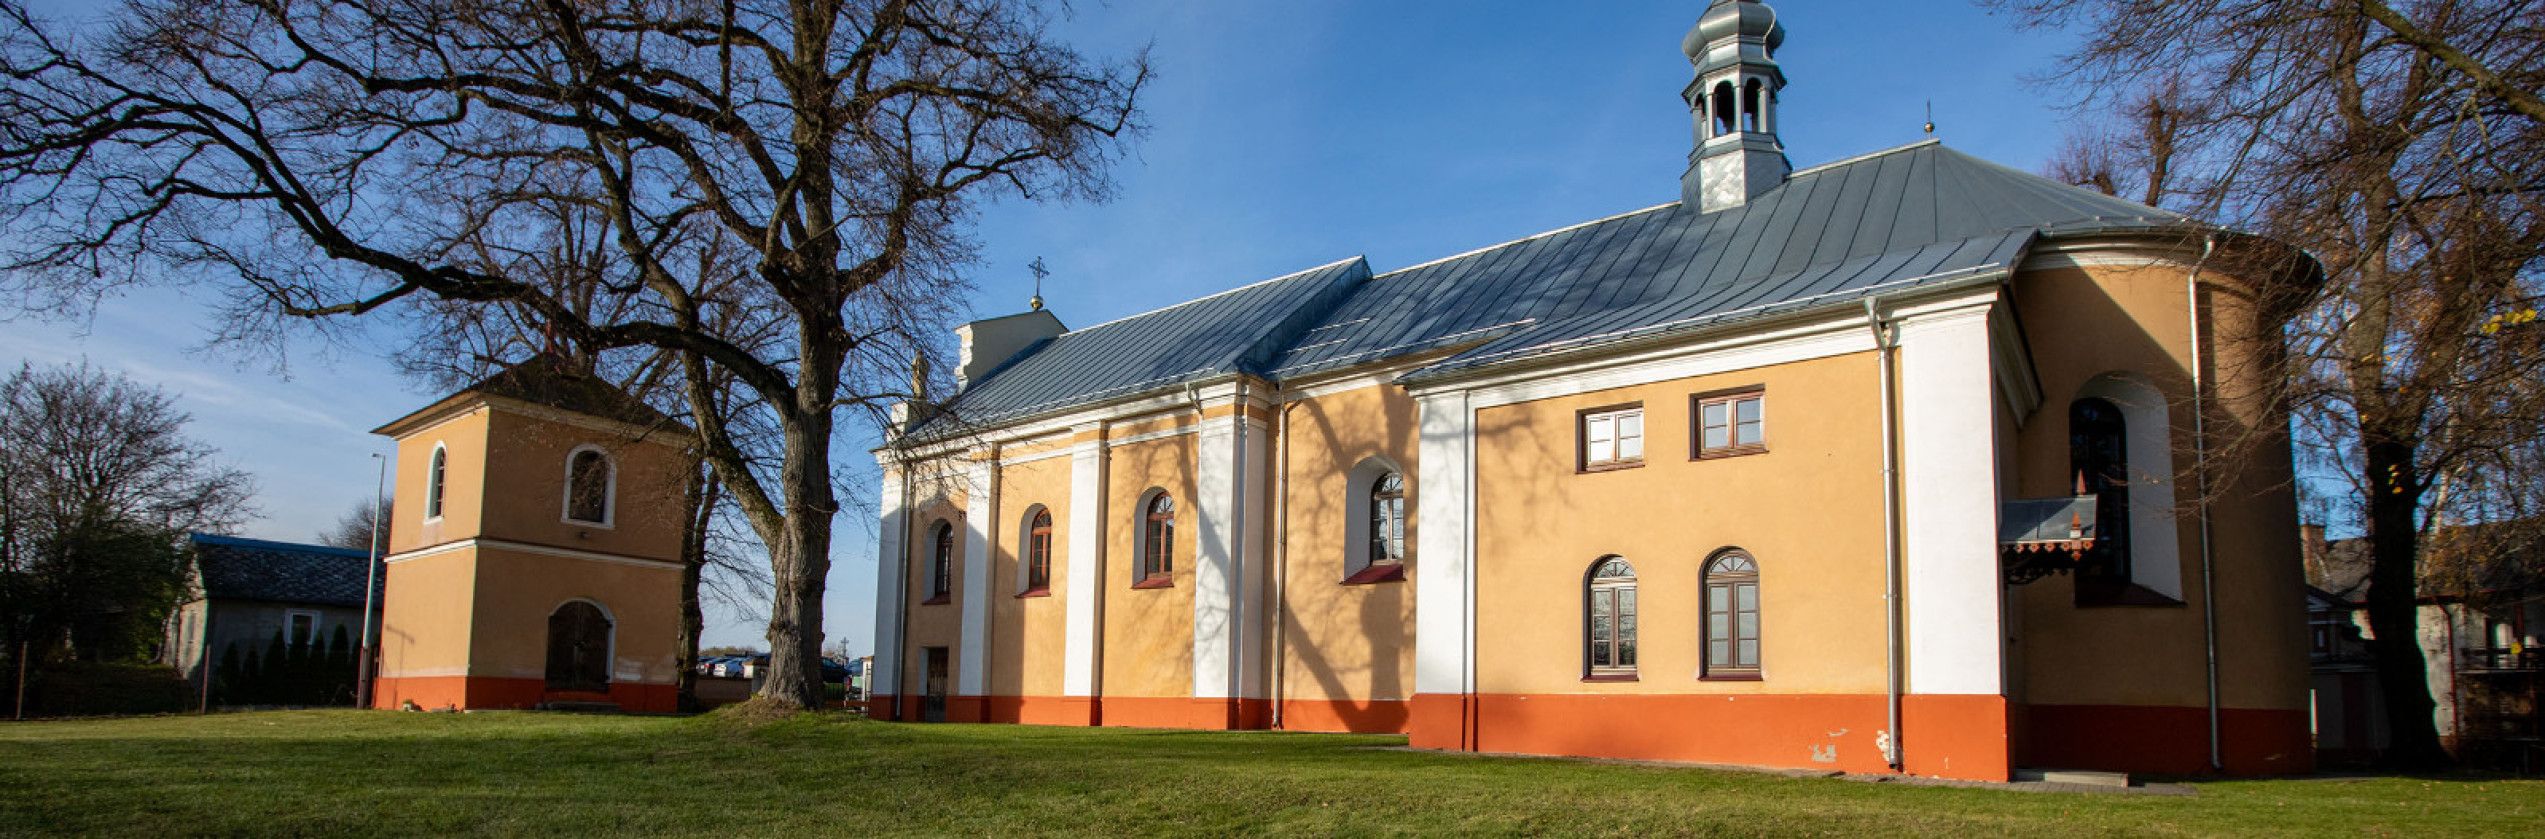 Czerniejów - Kościół pw. św. Wawrzyńca